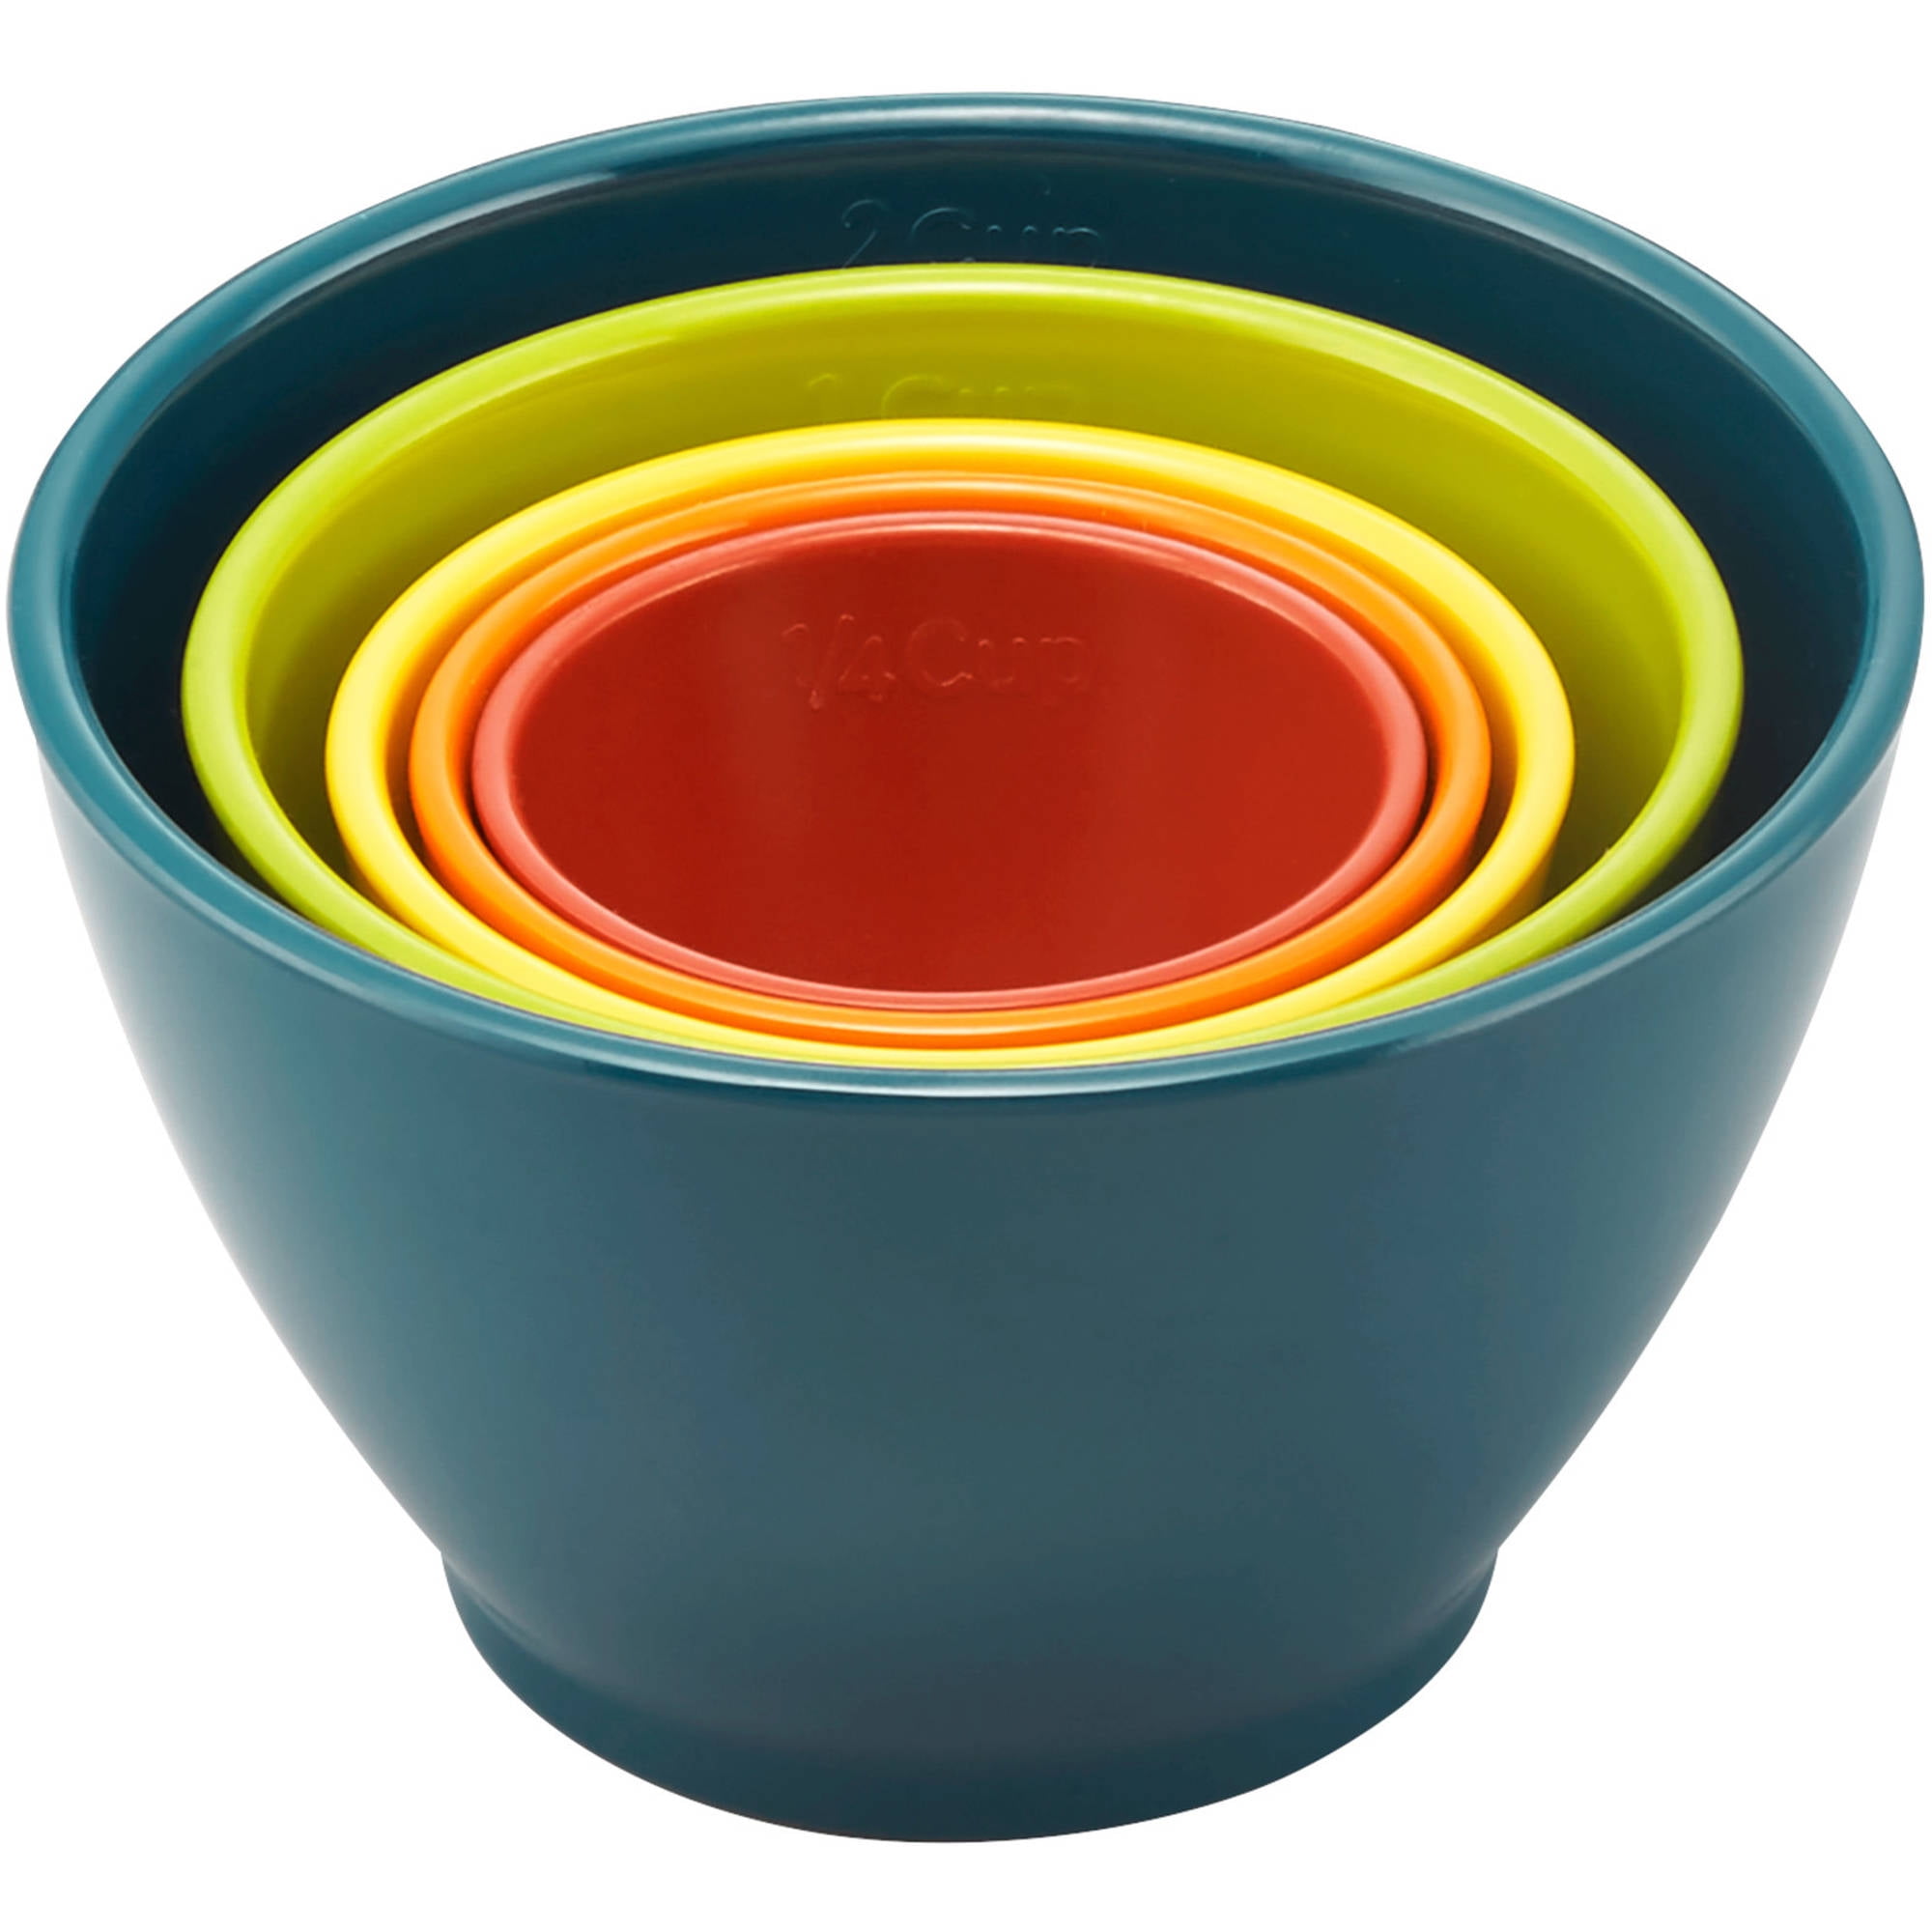 Wholesale 5 Piece Measuring Cup Set- Multicolor MULTICOLOR